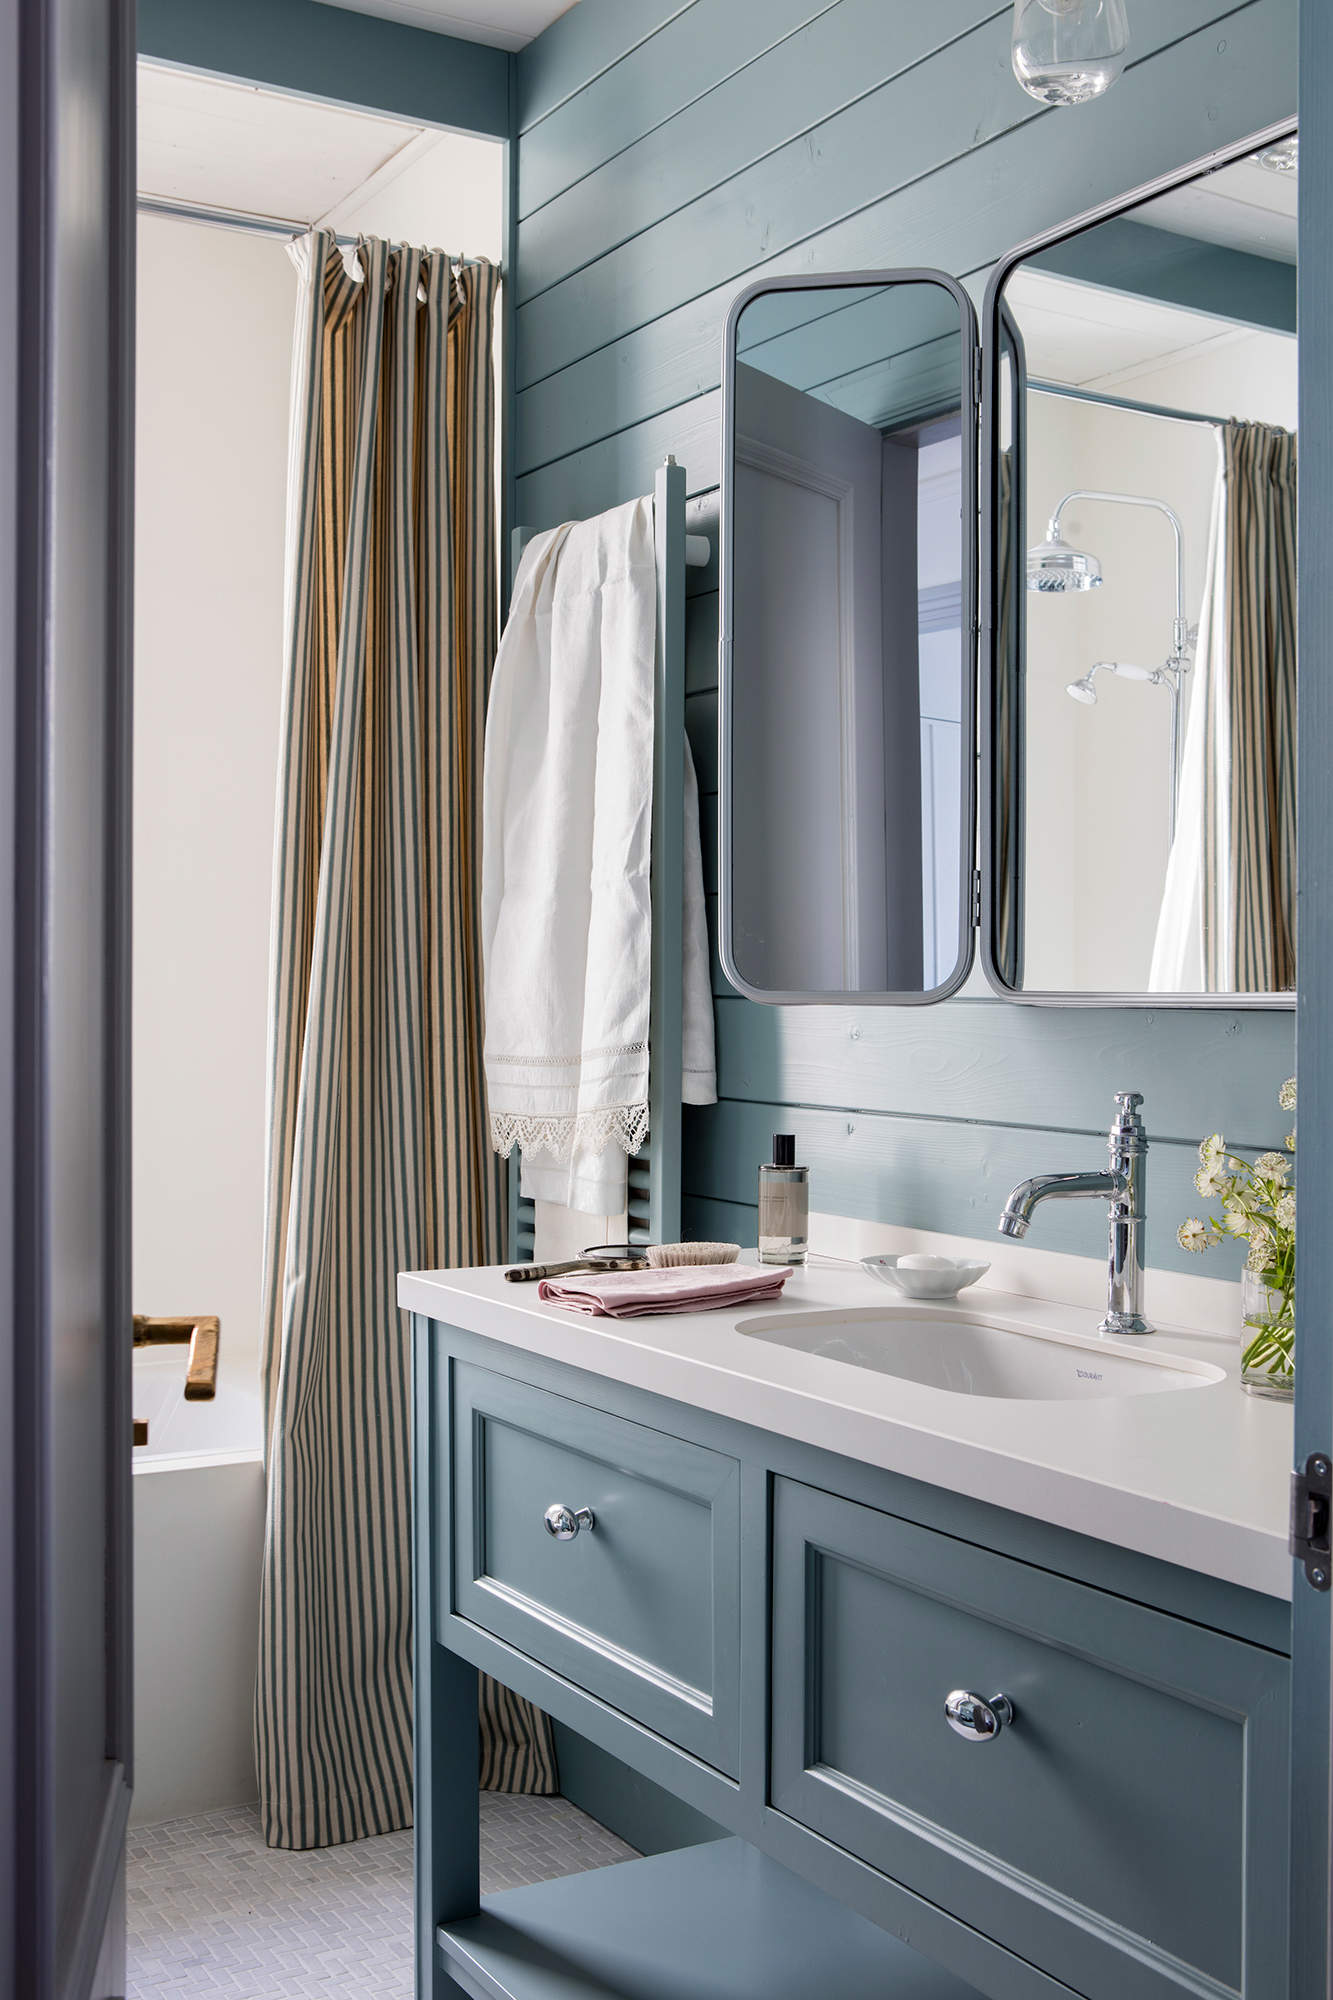 Baño decorado en gris azulado con cortina en la bañera